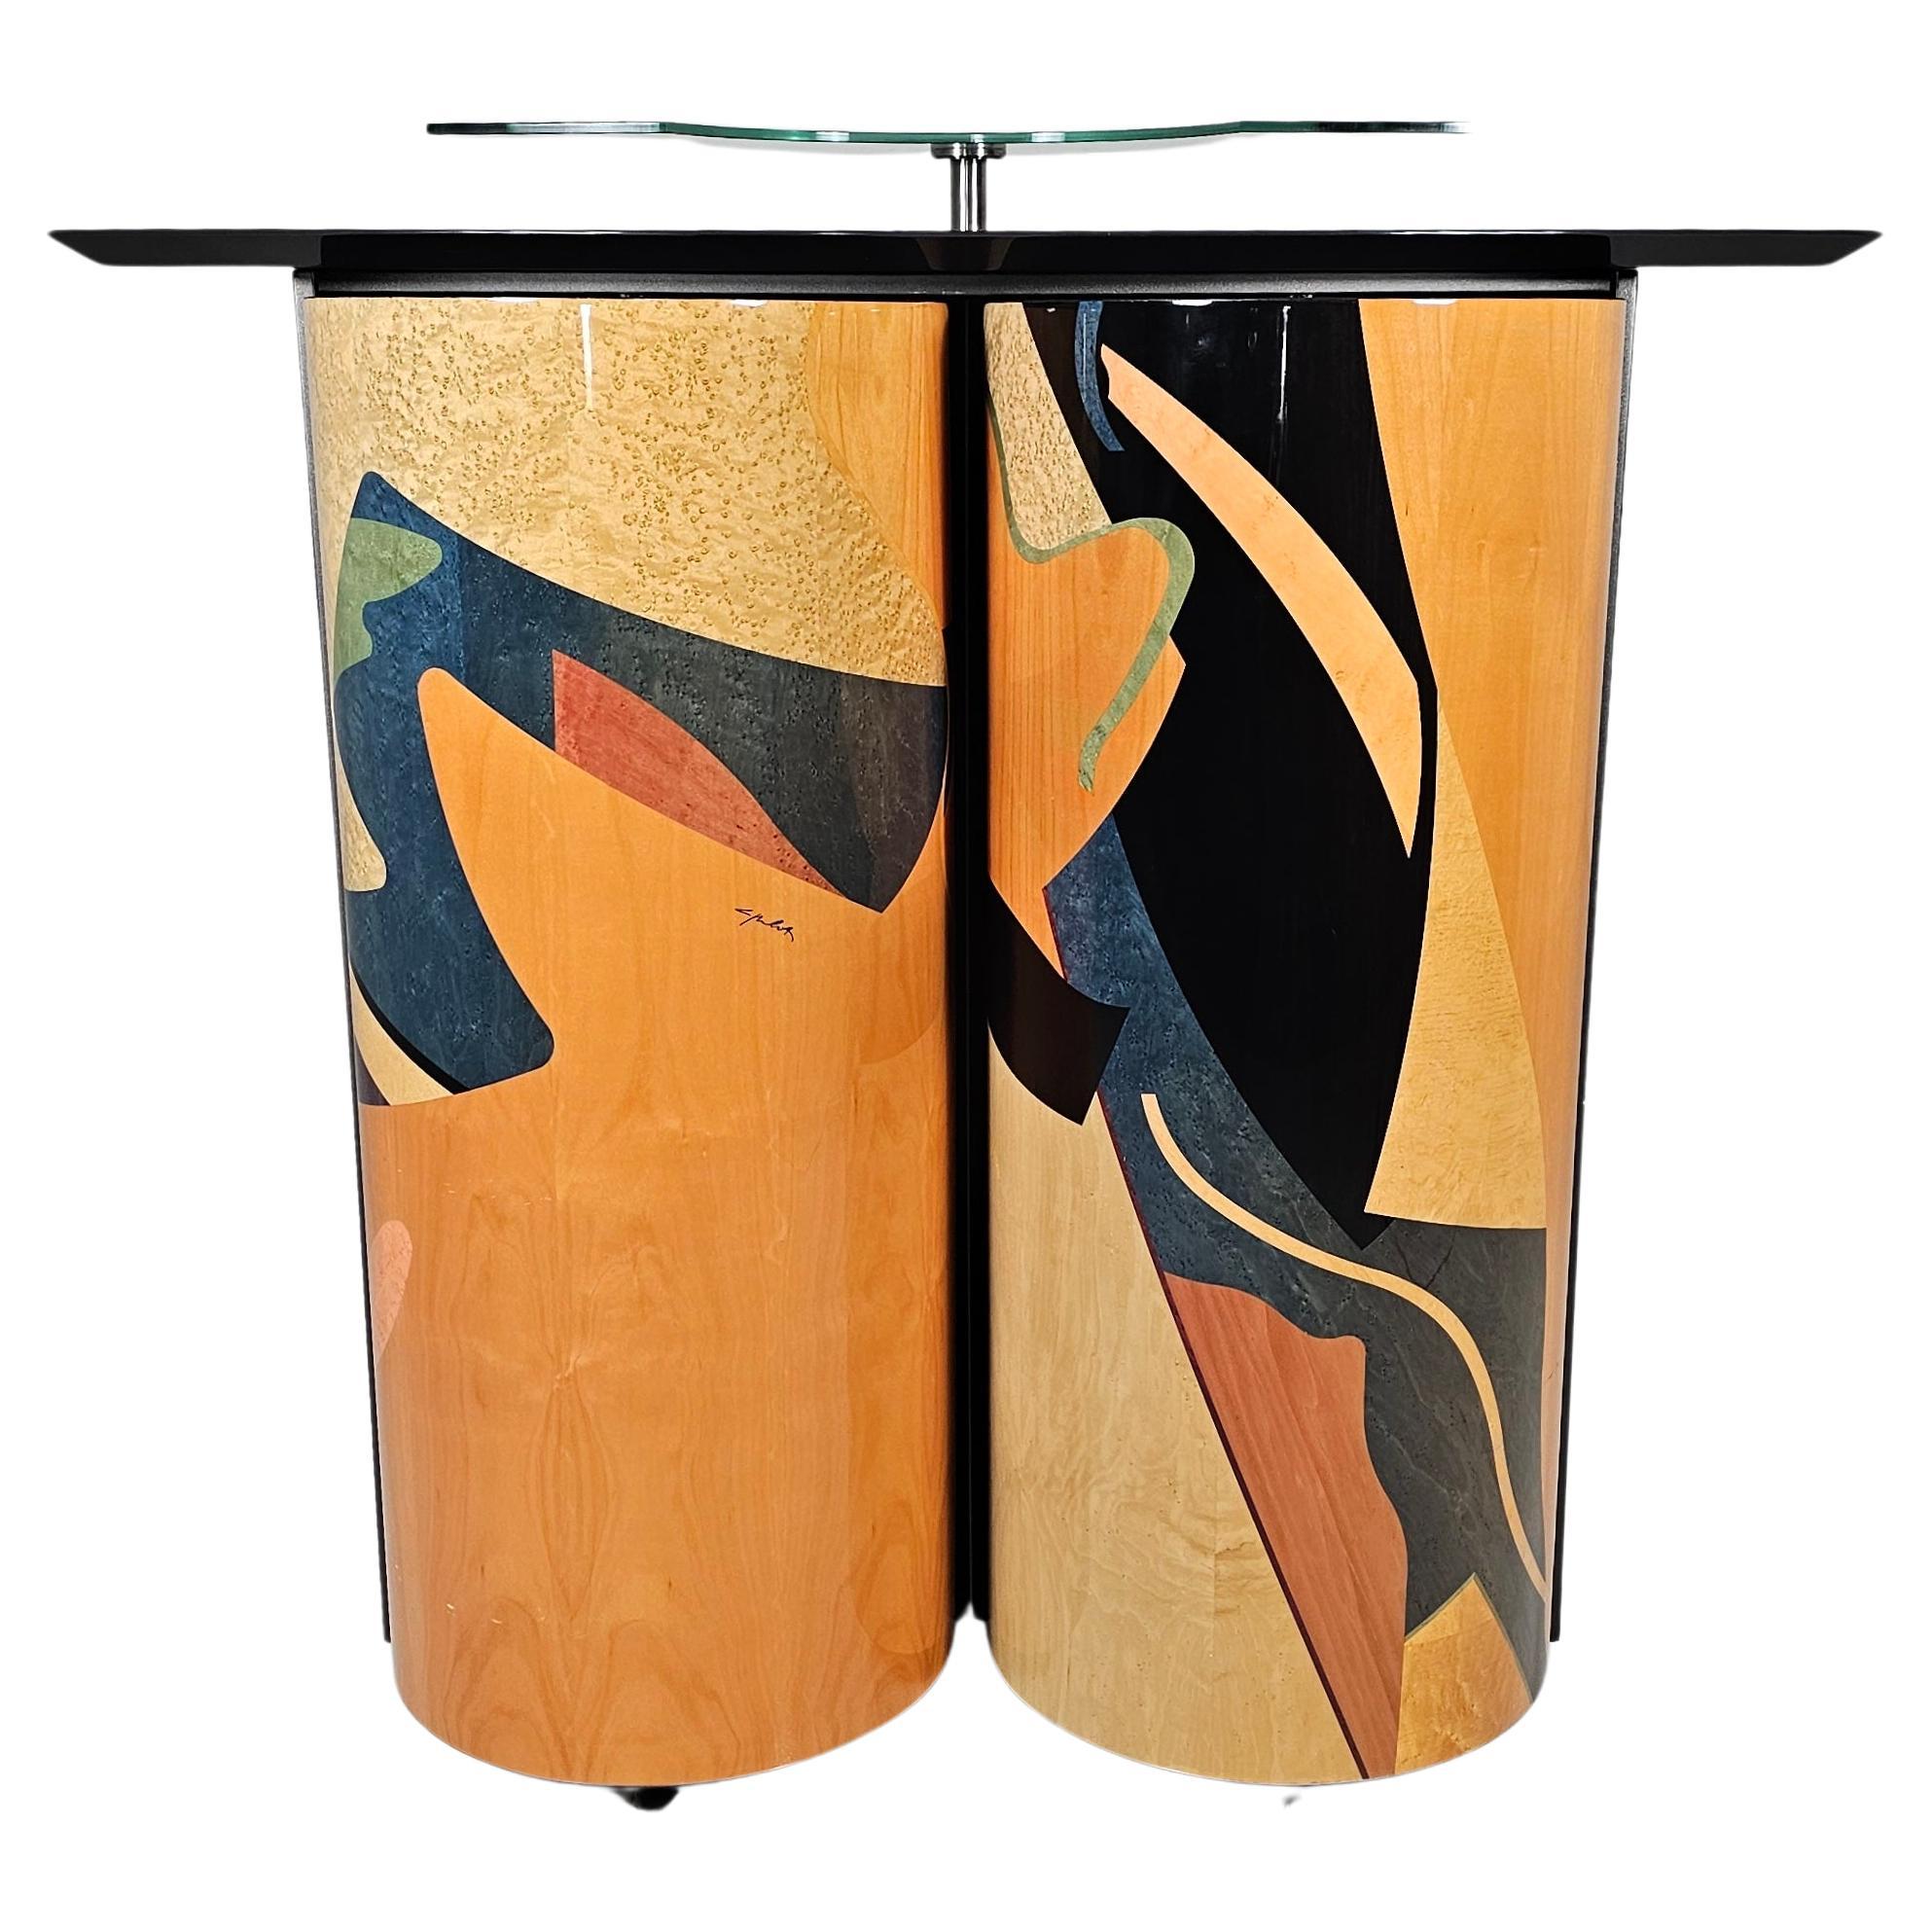 Einzigartige Trockenbar des Künstlers Carlo Malnati aus den 1980er Jahren. 
Mehrere verschiedene Holzeinlagen, die aus verschiedenfarbigen Stücken bestehen, um das Design zu gestalten. 

Postmodernes Memphis-Design der Extraklasse